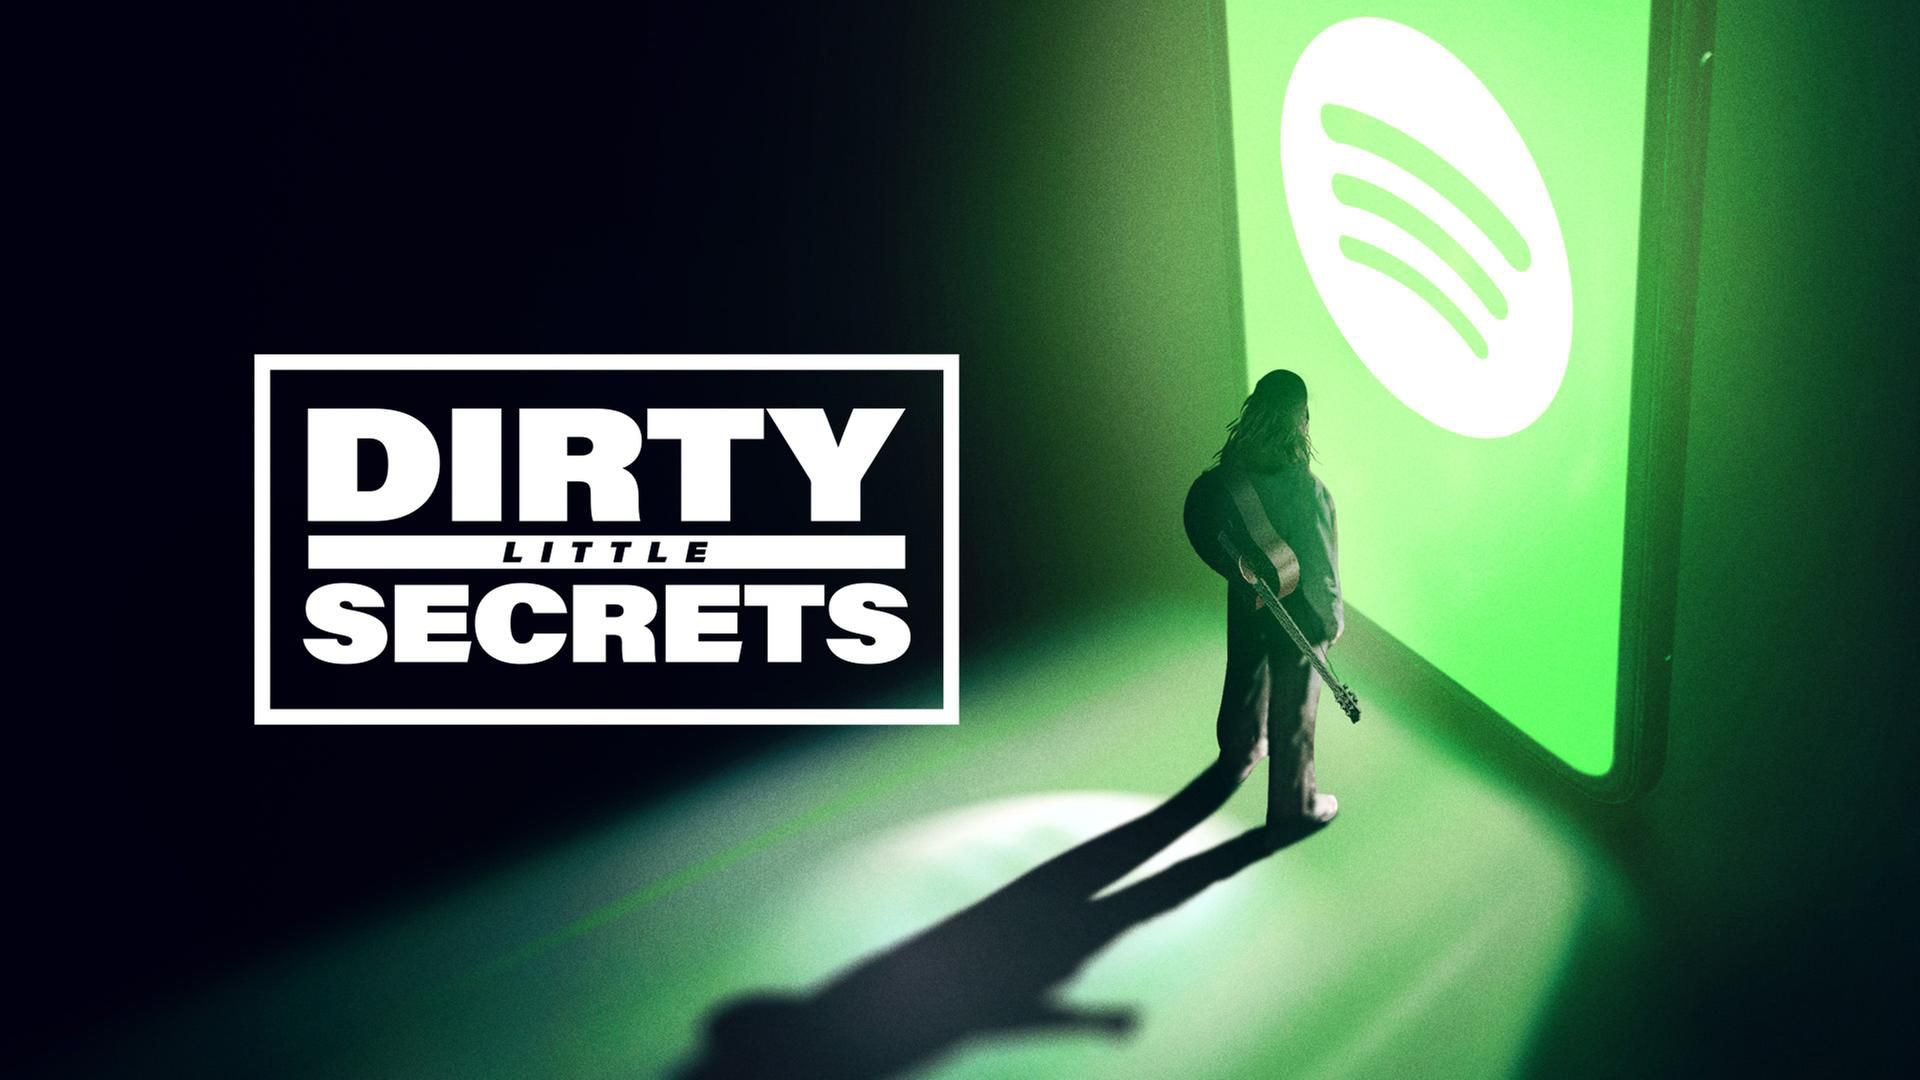 Dirty Little Secrets - Die Schattenseiten von Spotify, Eventim & Co.